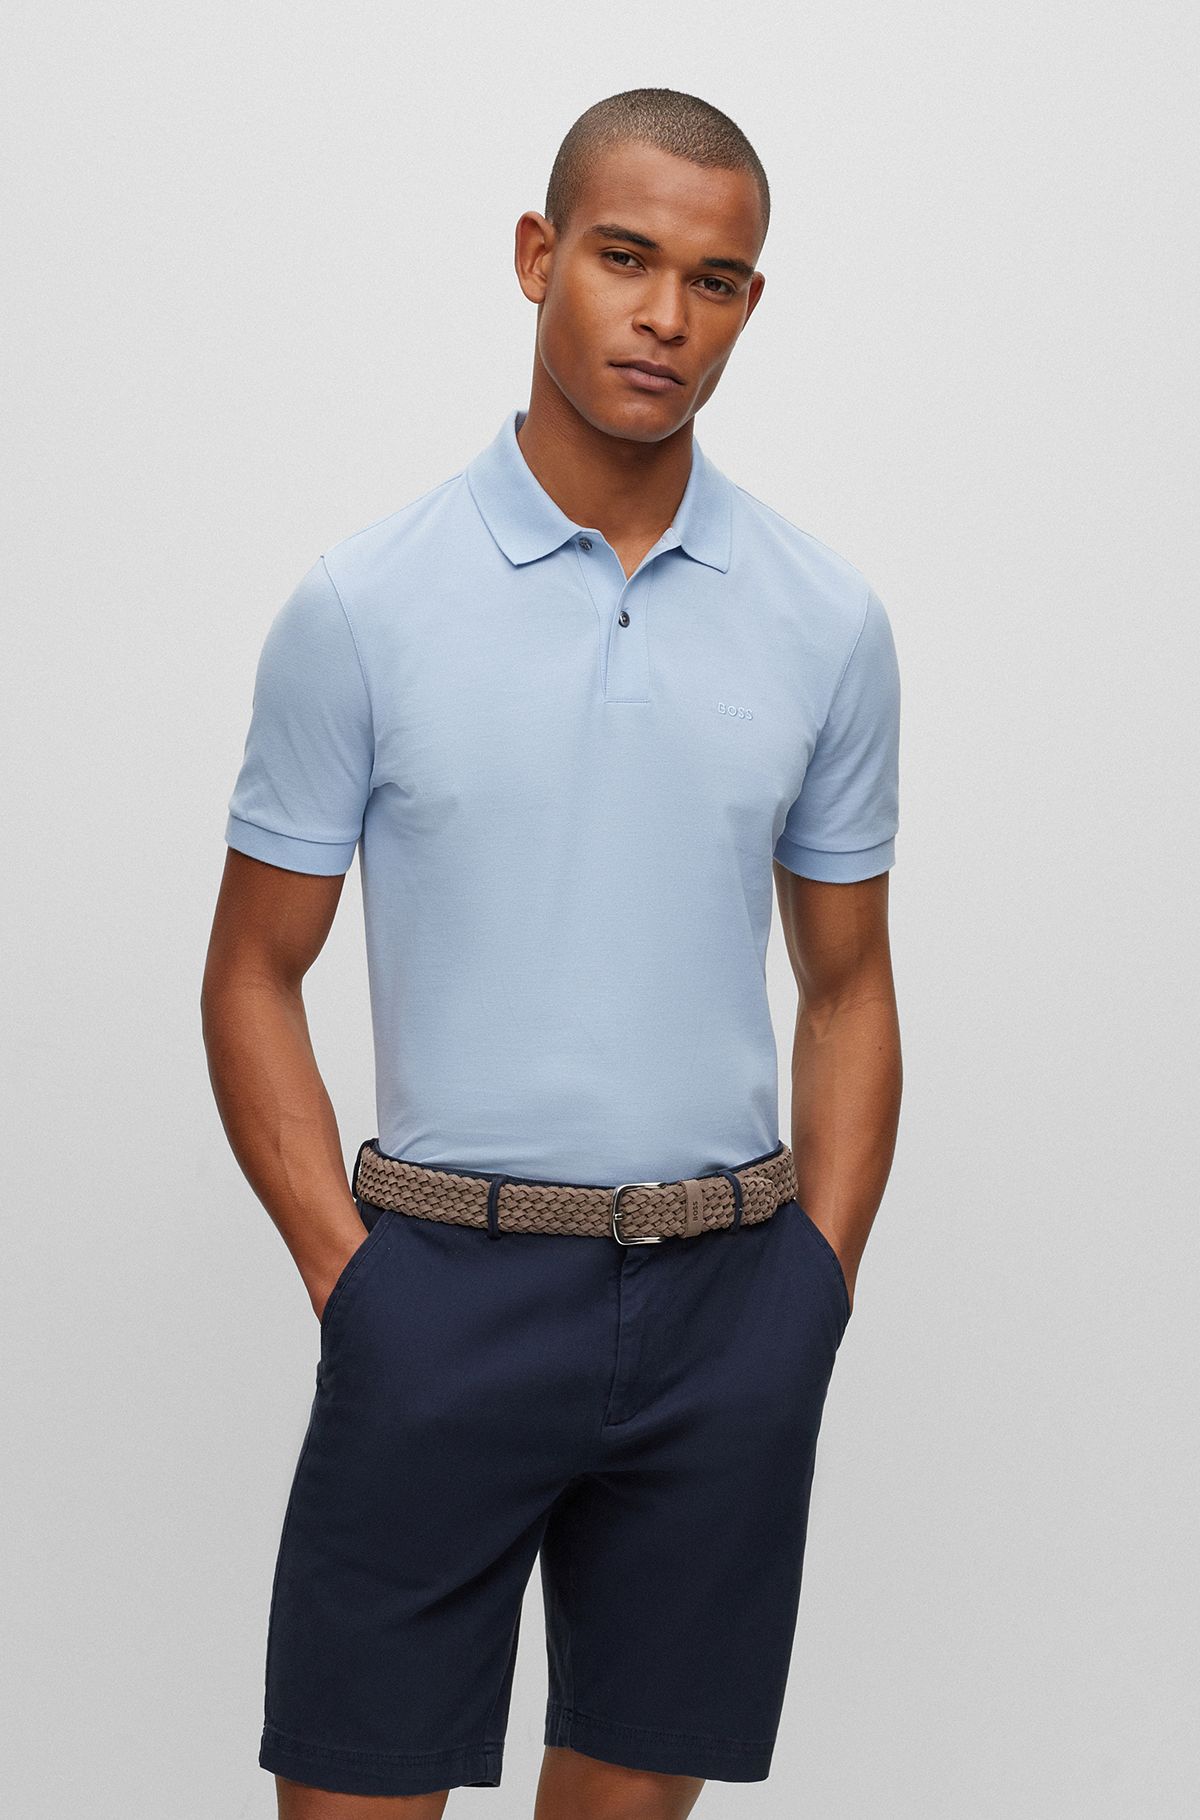 Polo en coton biologique avec logo brodé, bleu clair